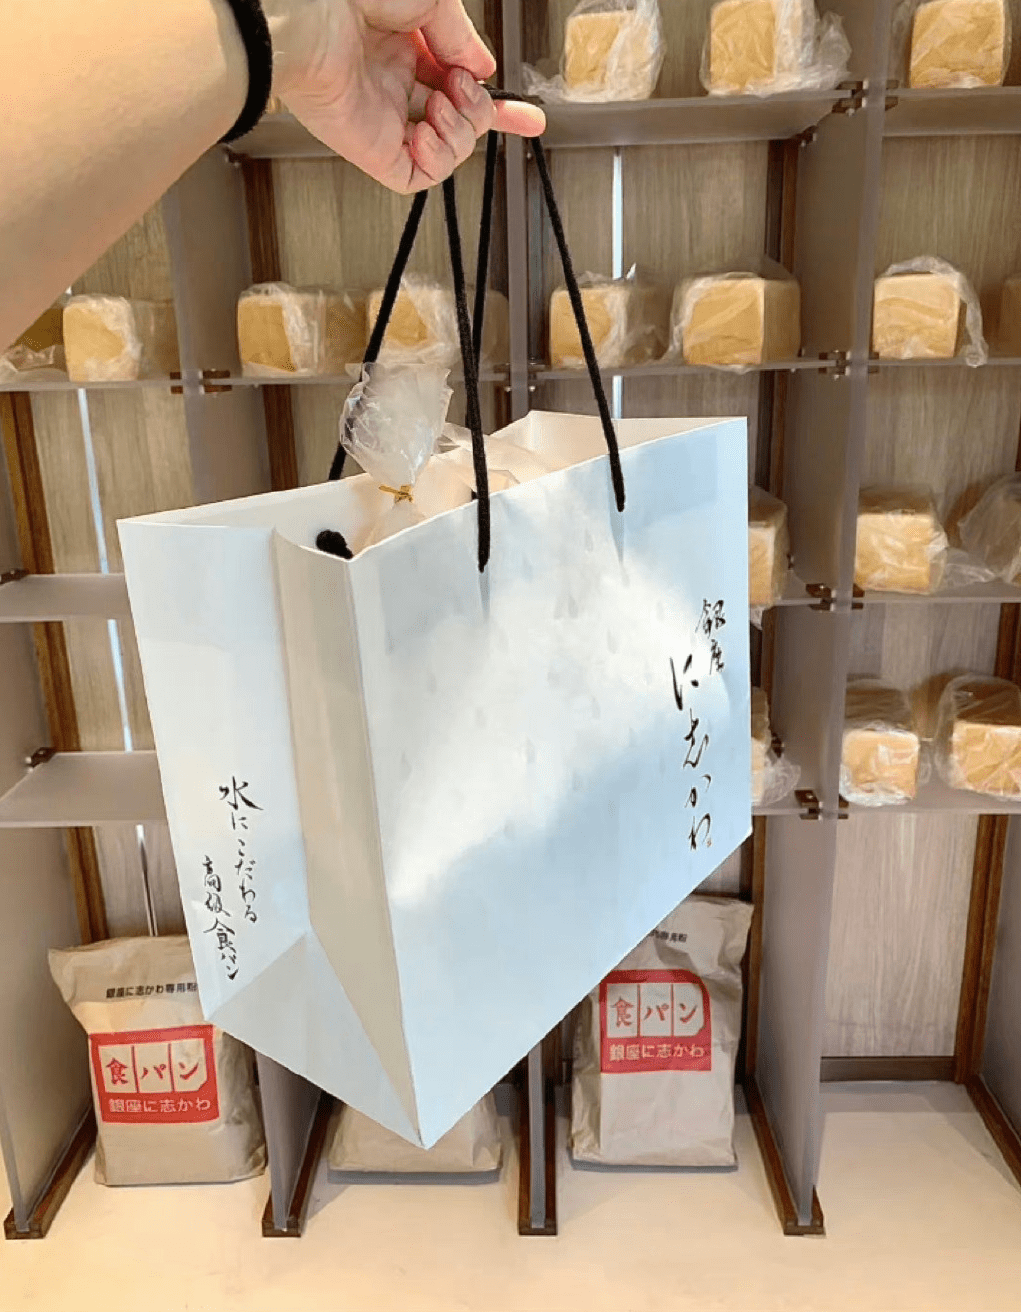 該店為上海新開業的麵包店，賣的是號稱日本排名第二的麵包。